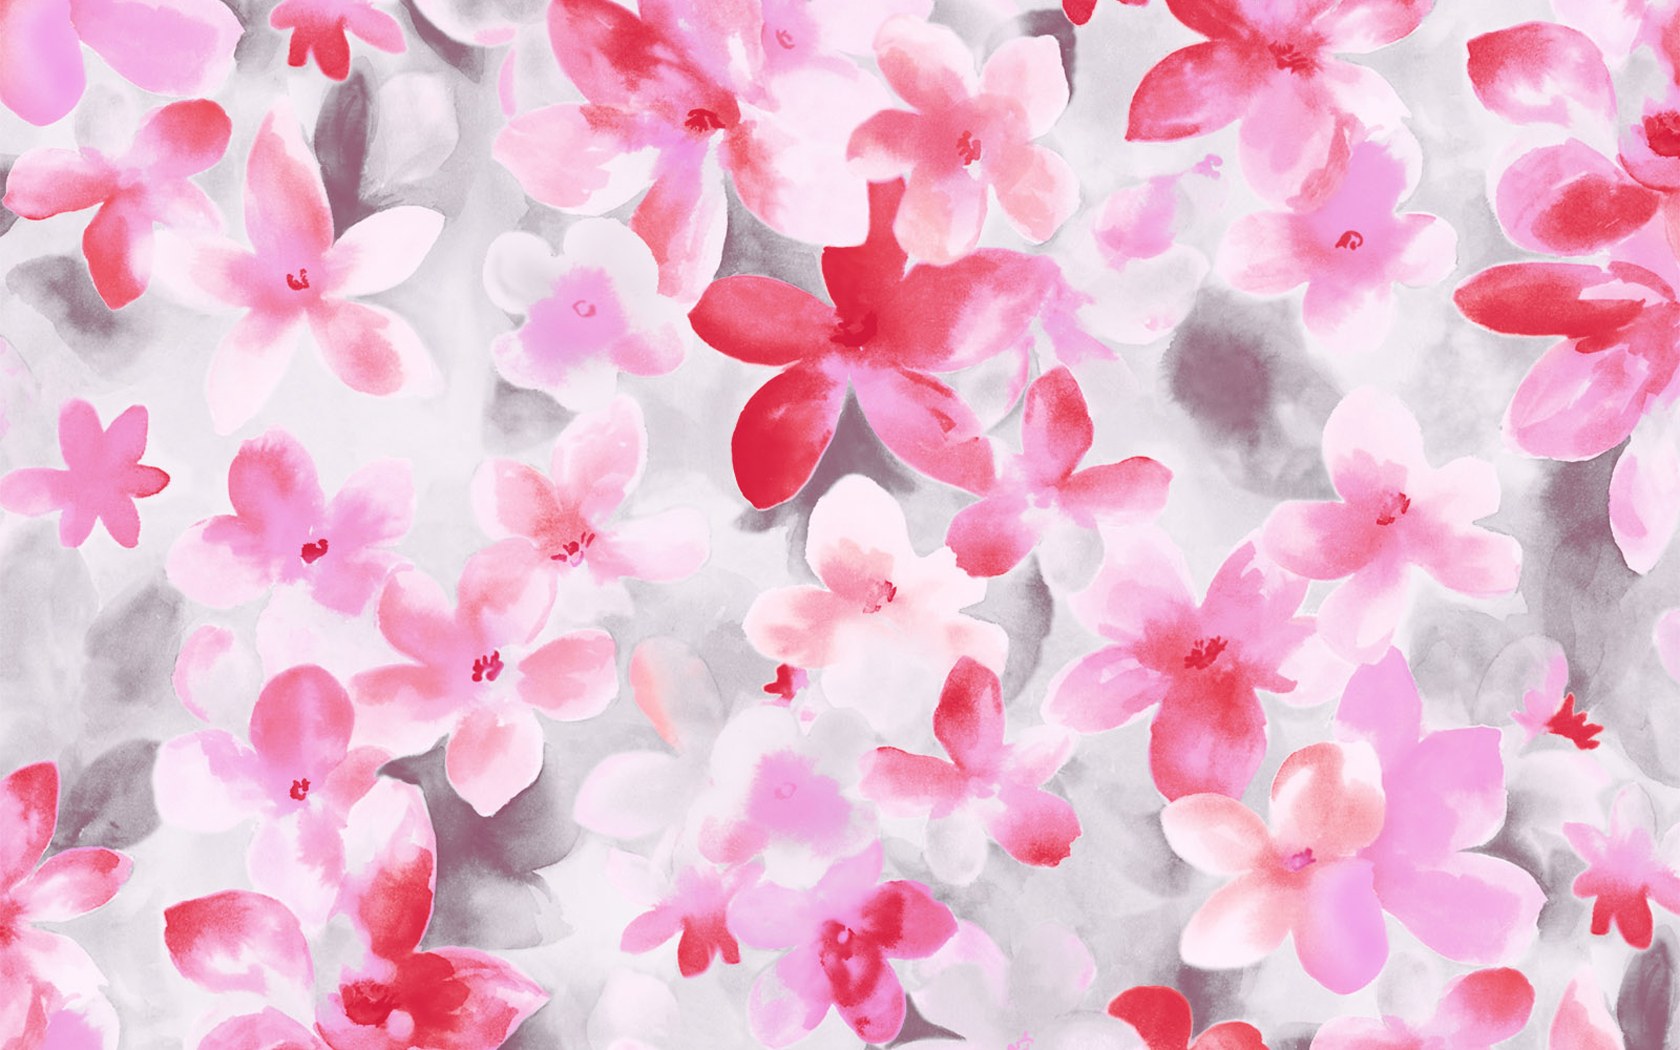 HD Flower Illustrations Design Floral Patterns